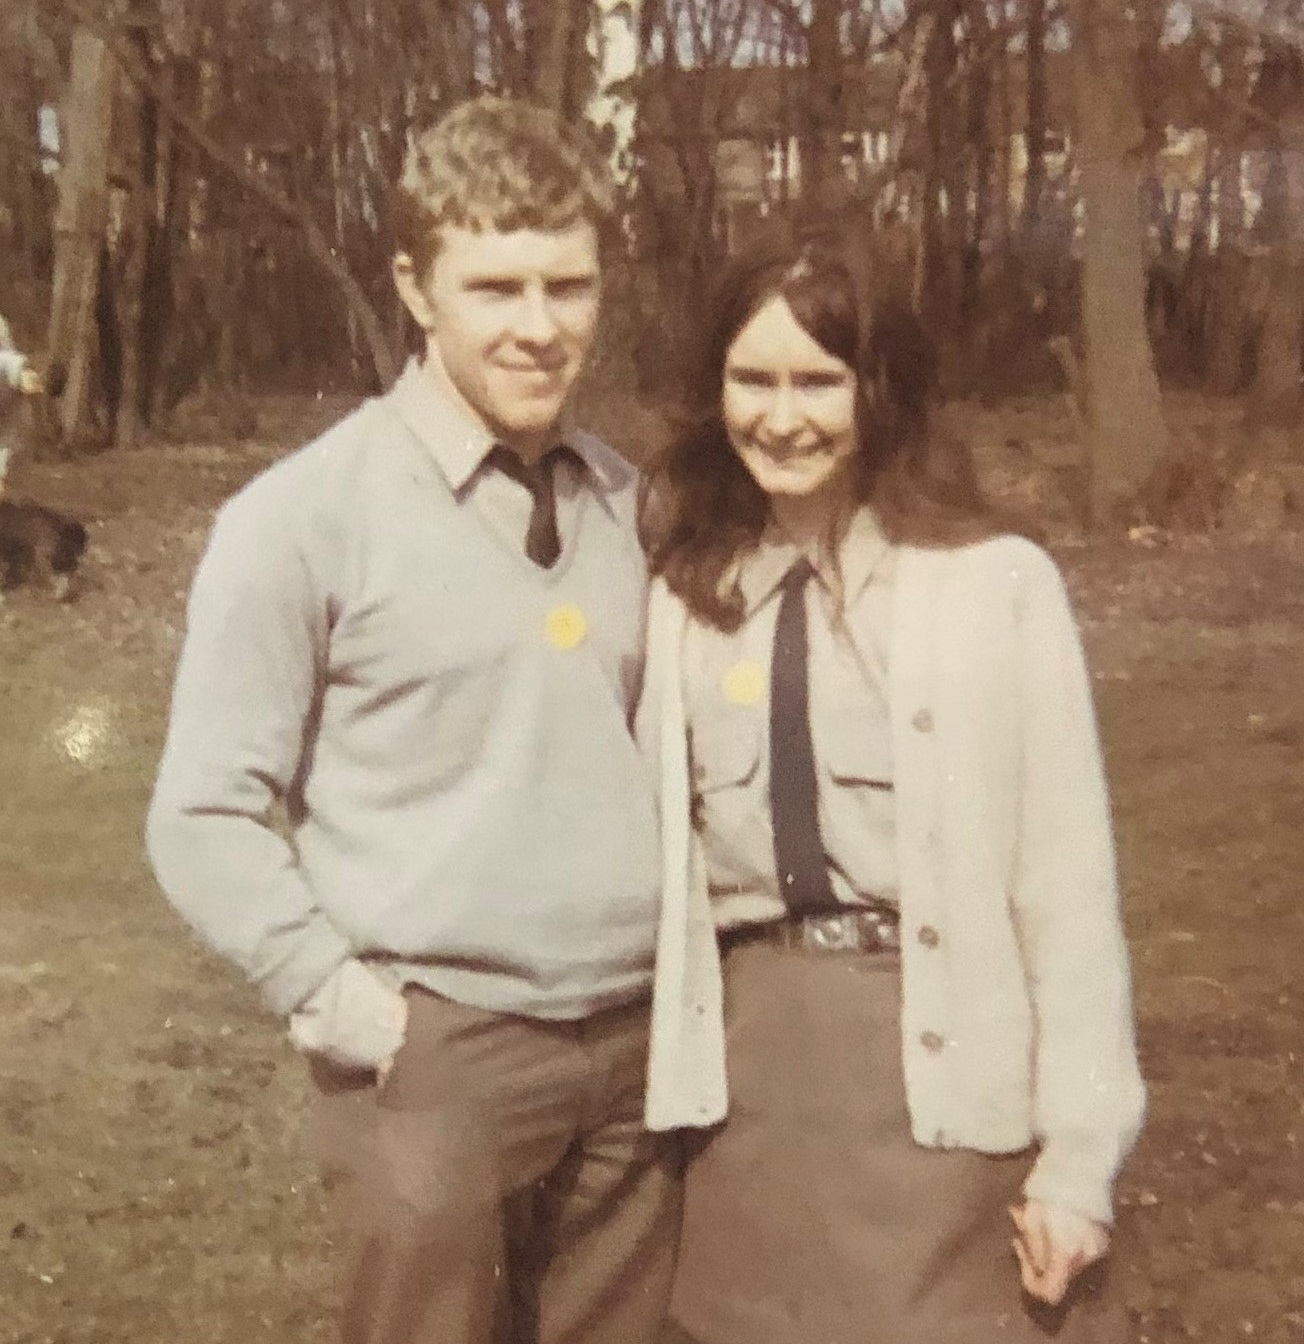 Eileen and her boyfriend in 1970